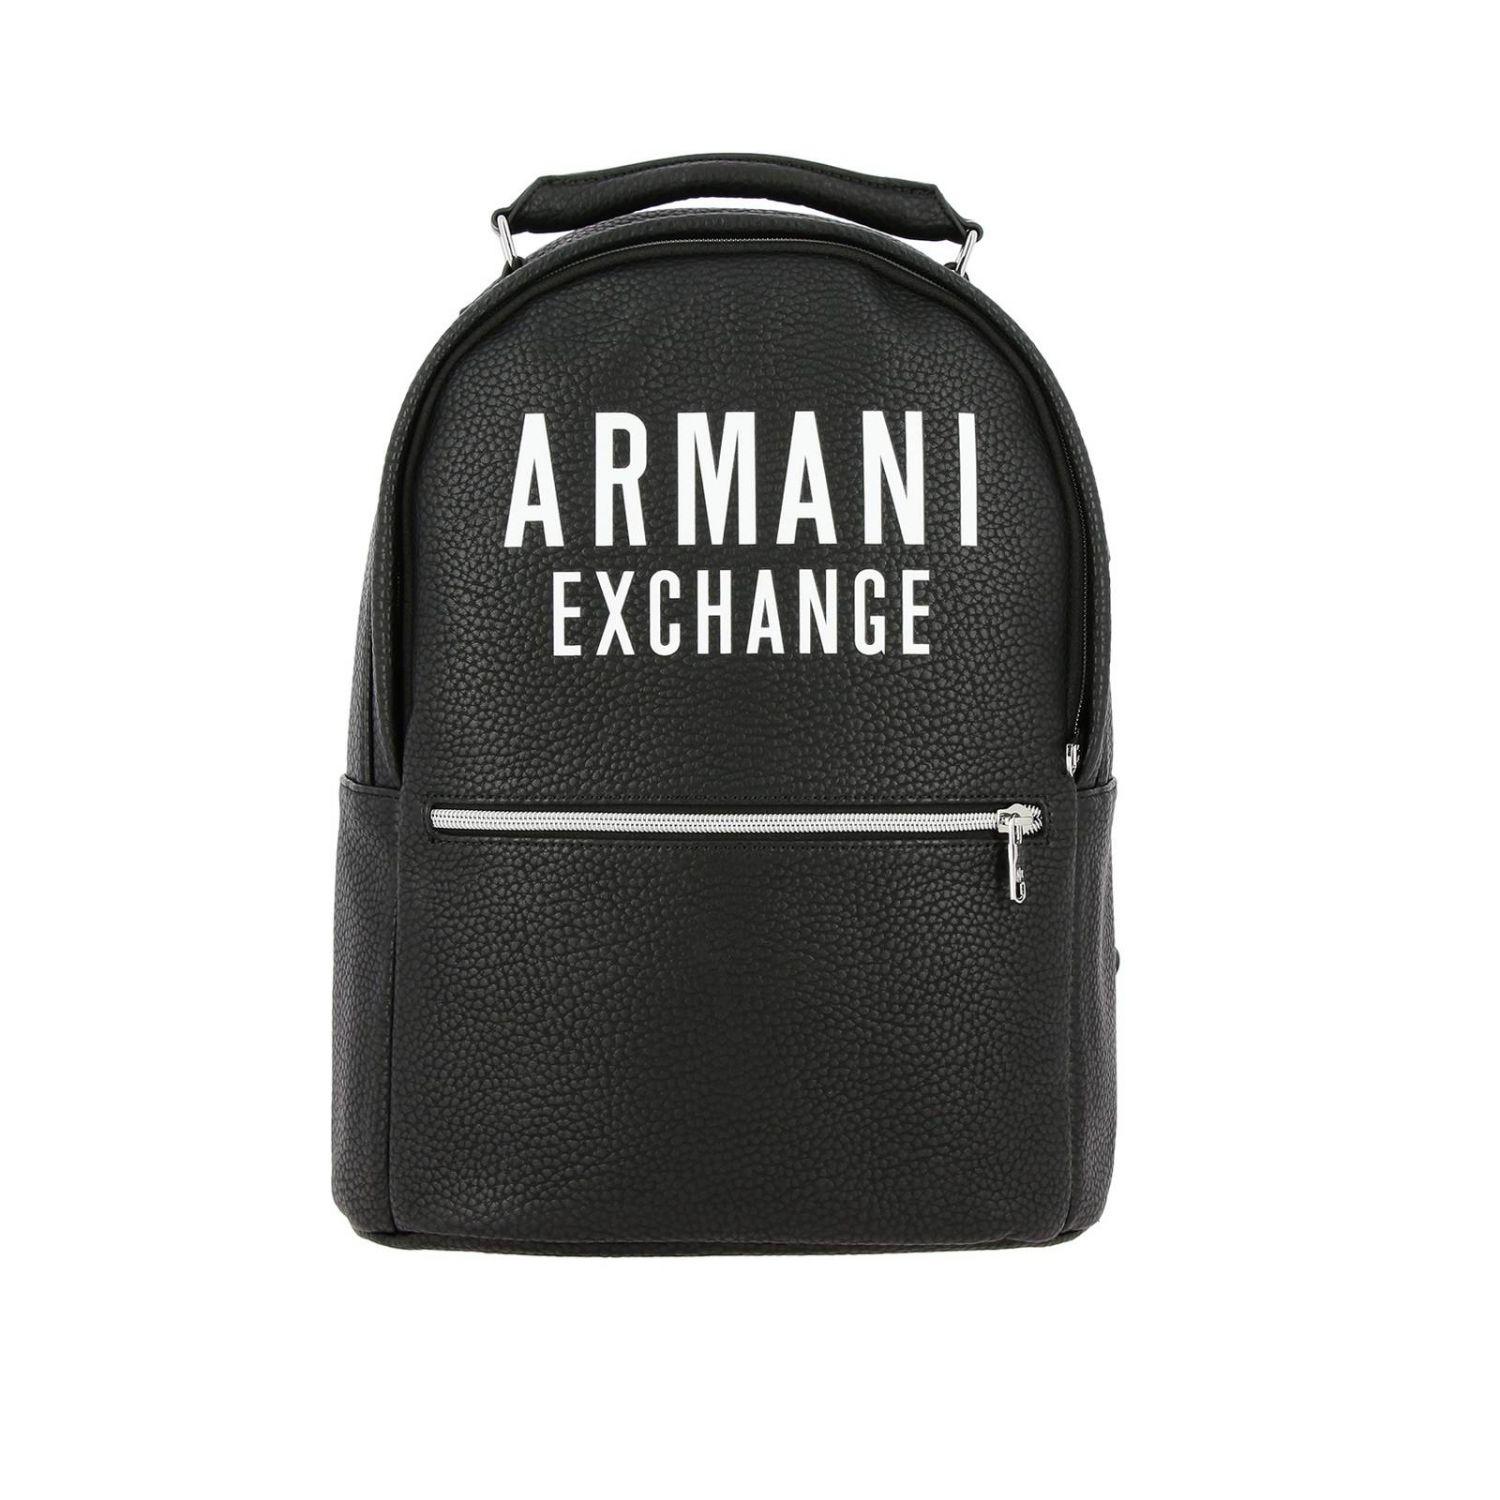 armani exchange logo backpack